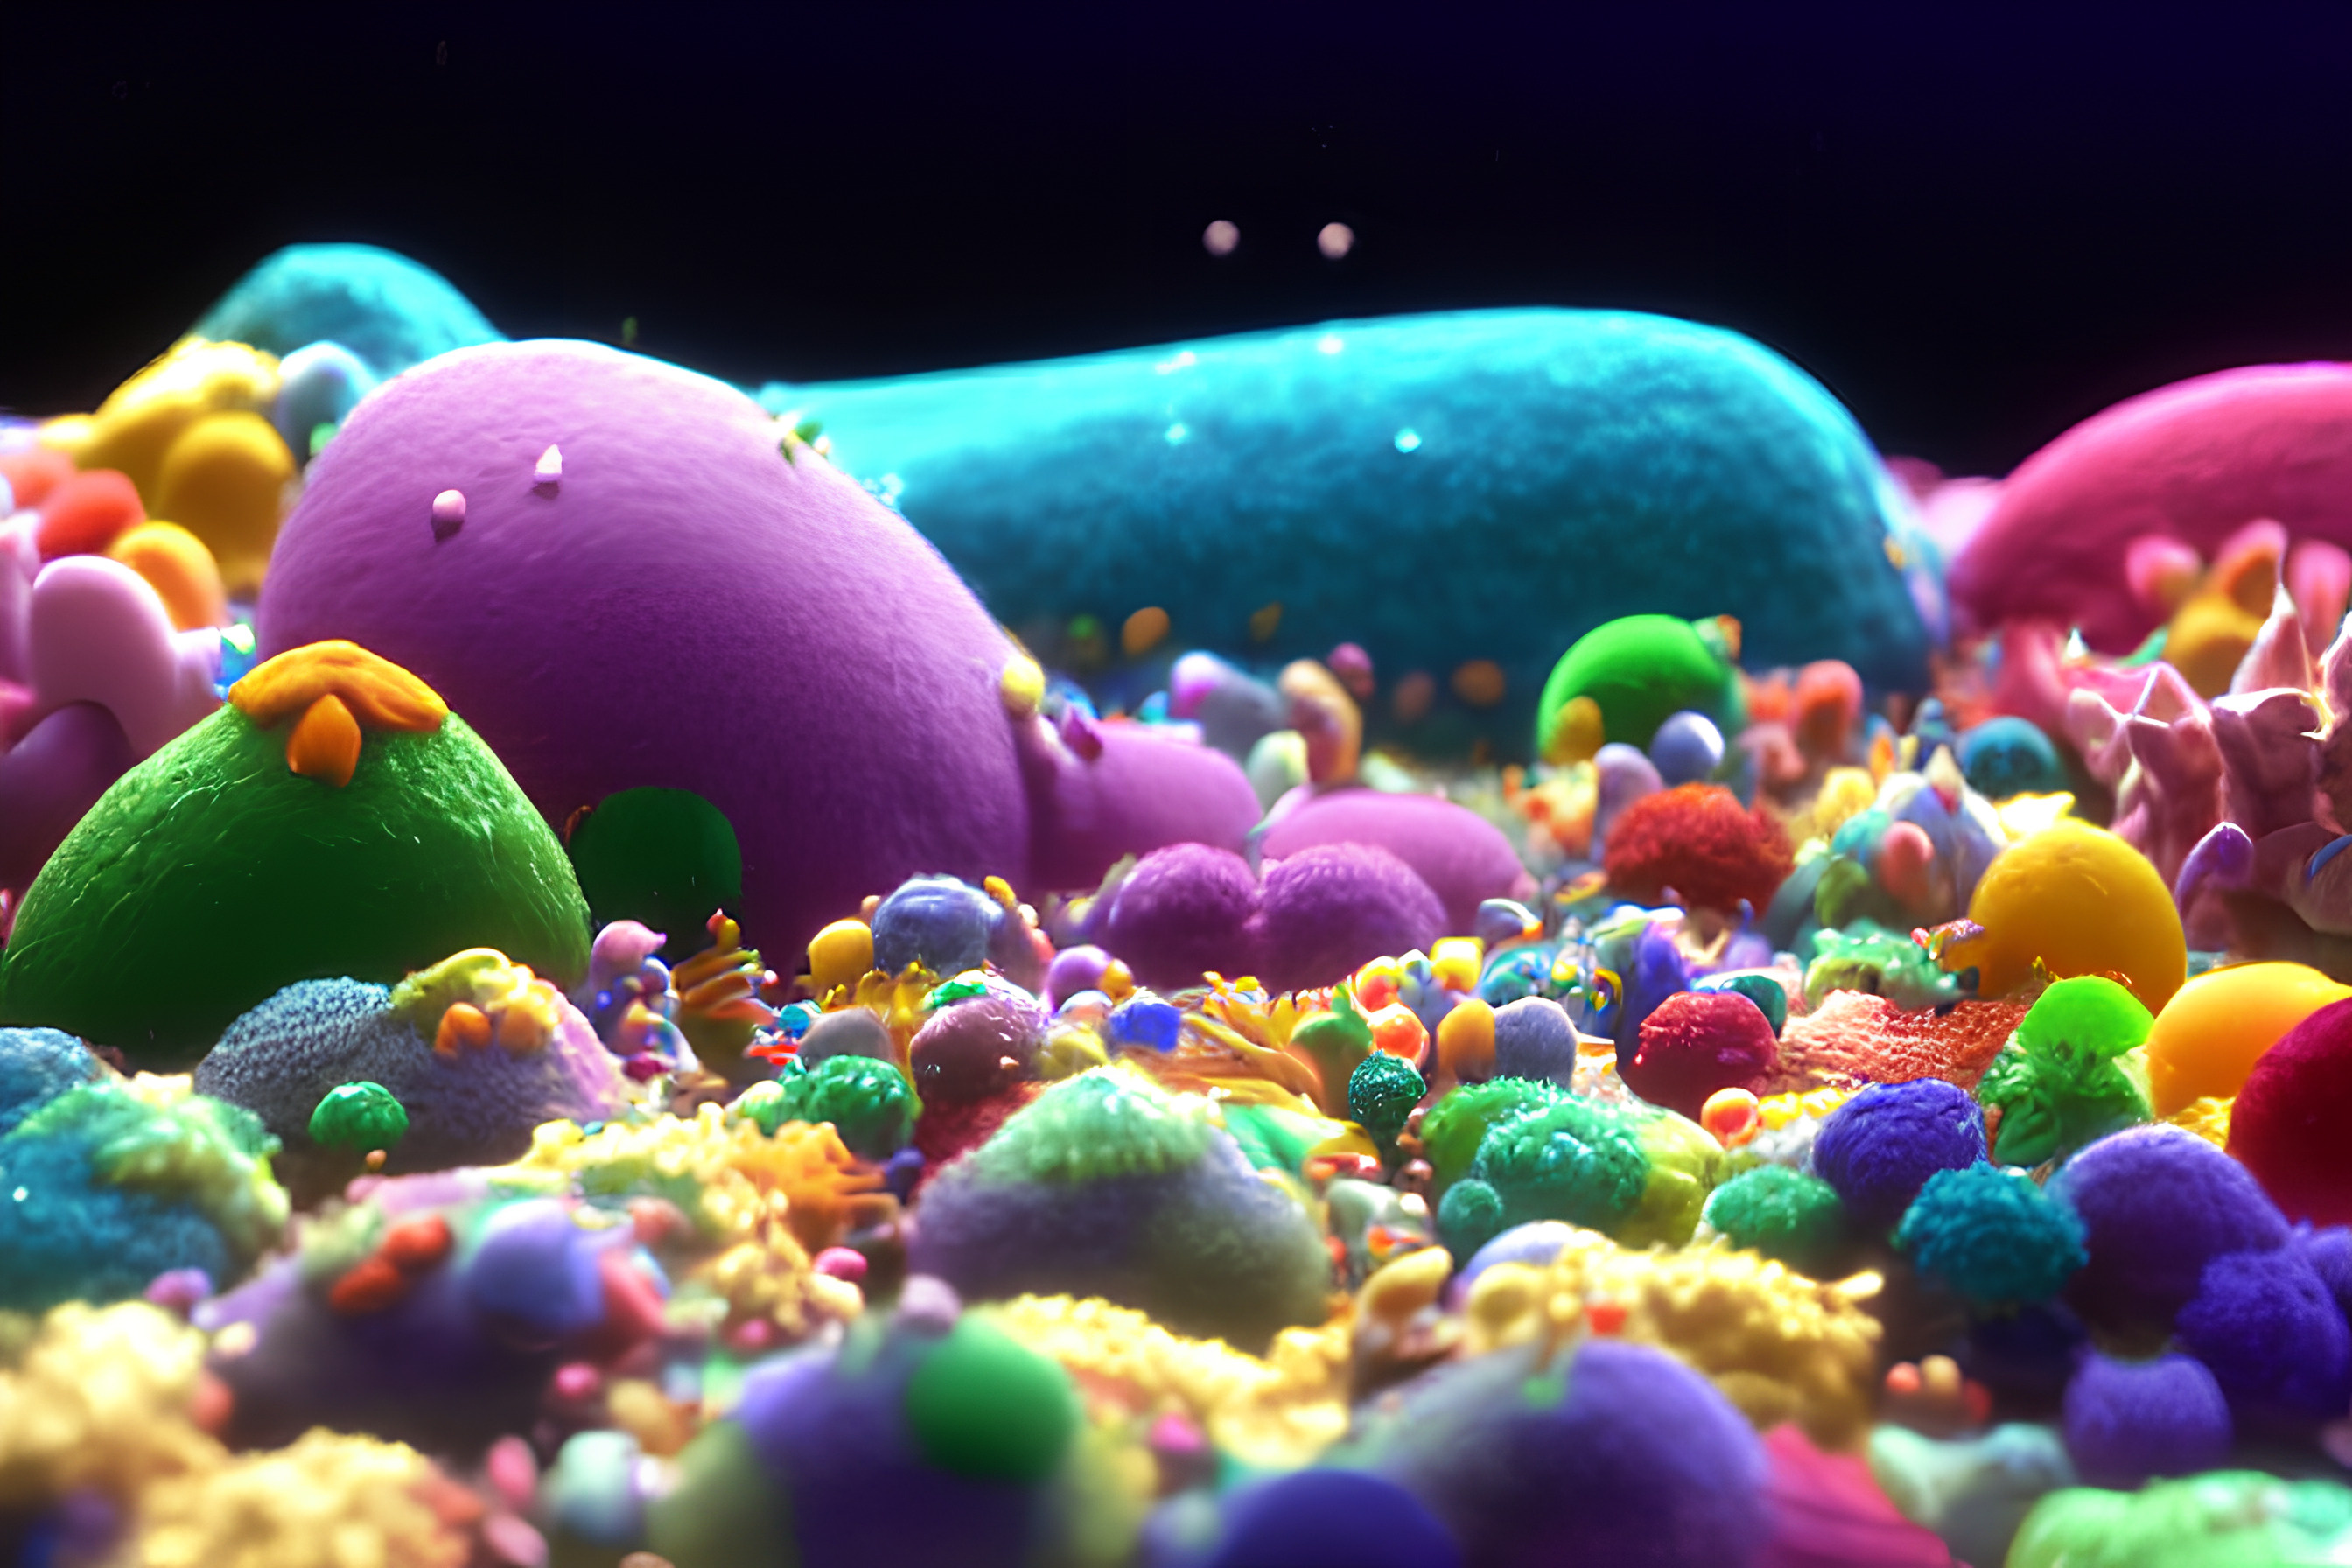 Le microbiote est constitué de champignons, de bactéries, de virus.&nbsp;© Carl, Adobe Stock